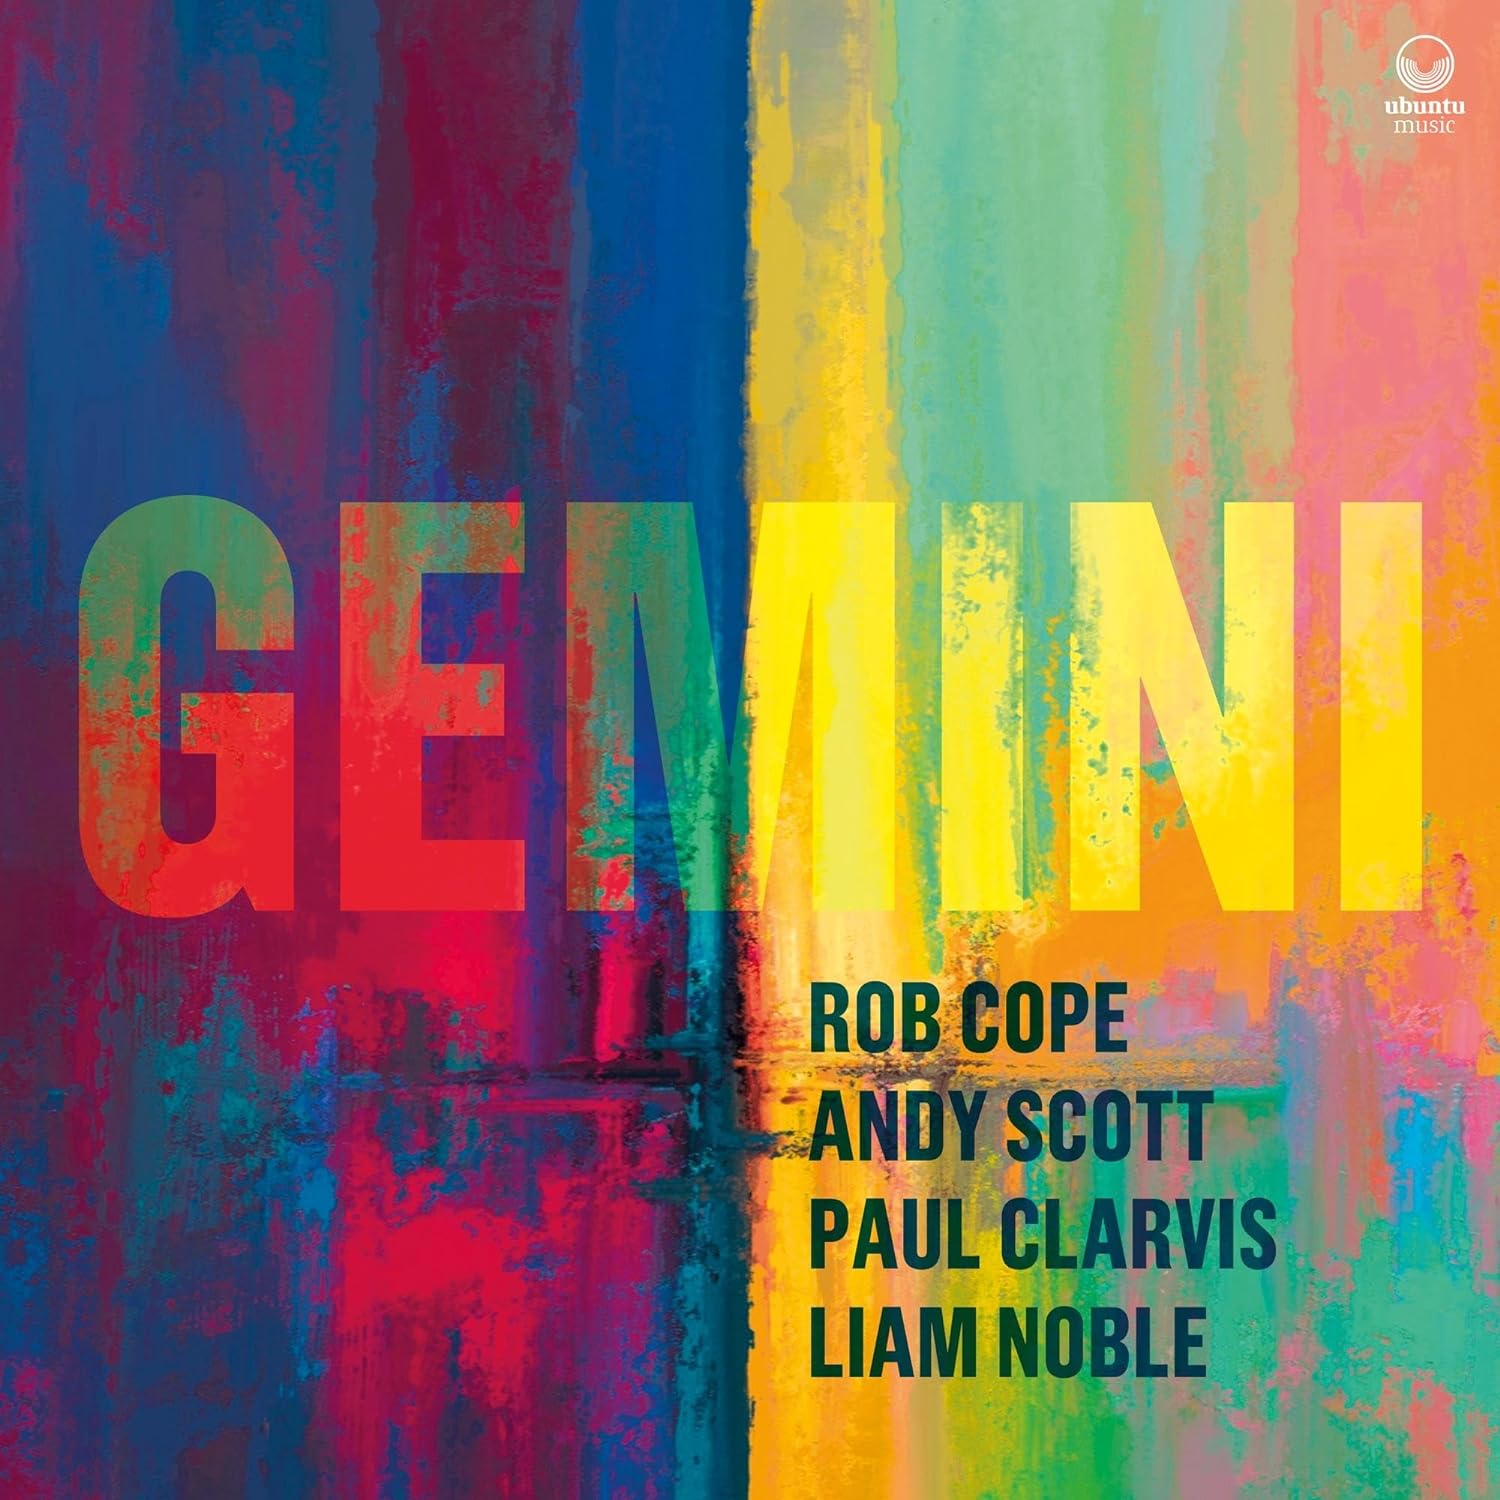 ROB COPE - Gemini cover 